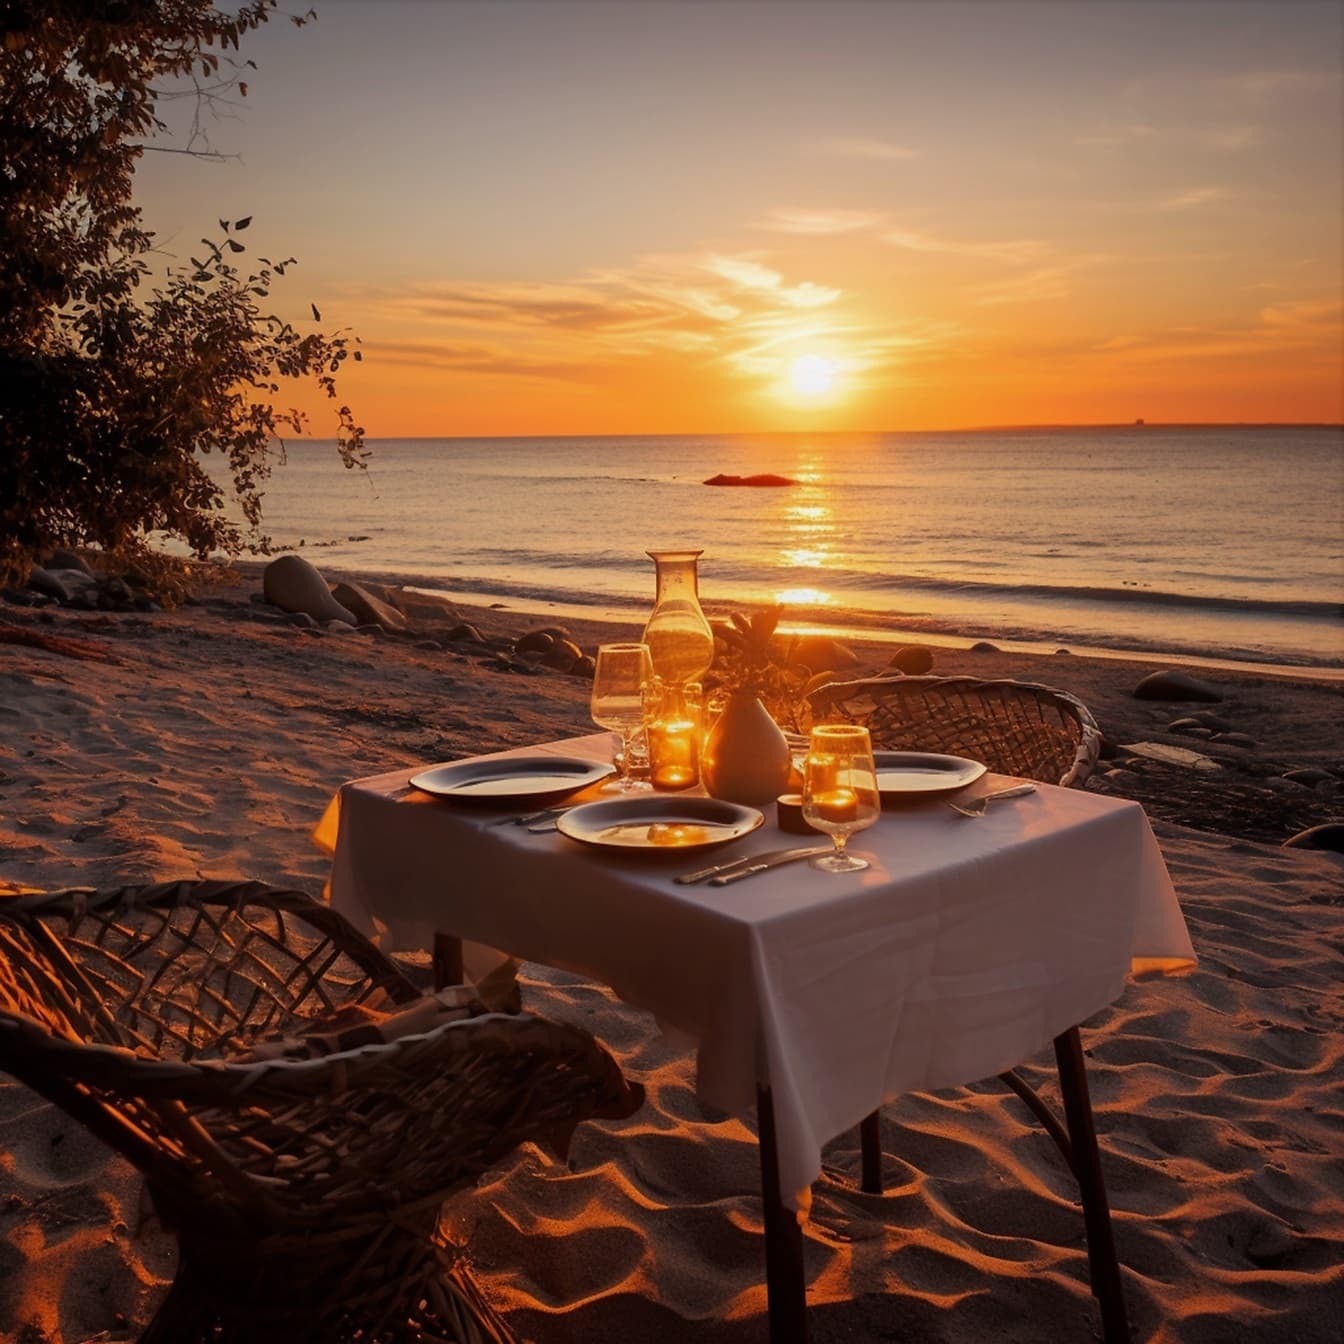 석양이 질 무렵 아름다운 해변가에서 즐기는 로맨틱한 저녁 식사 테이블